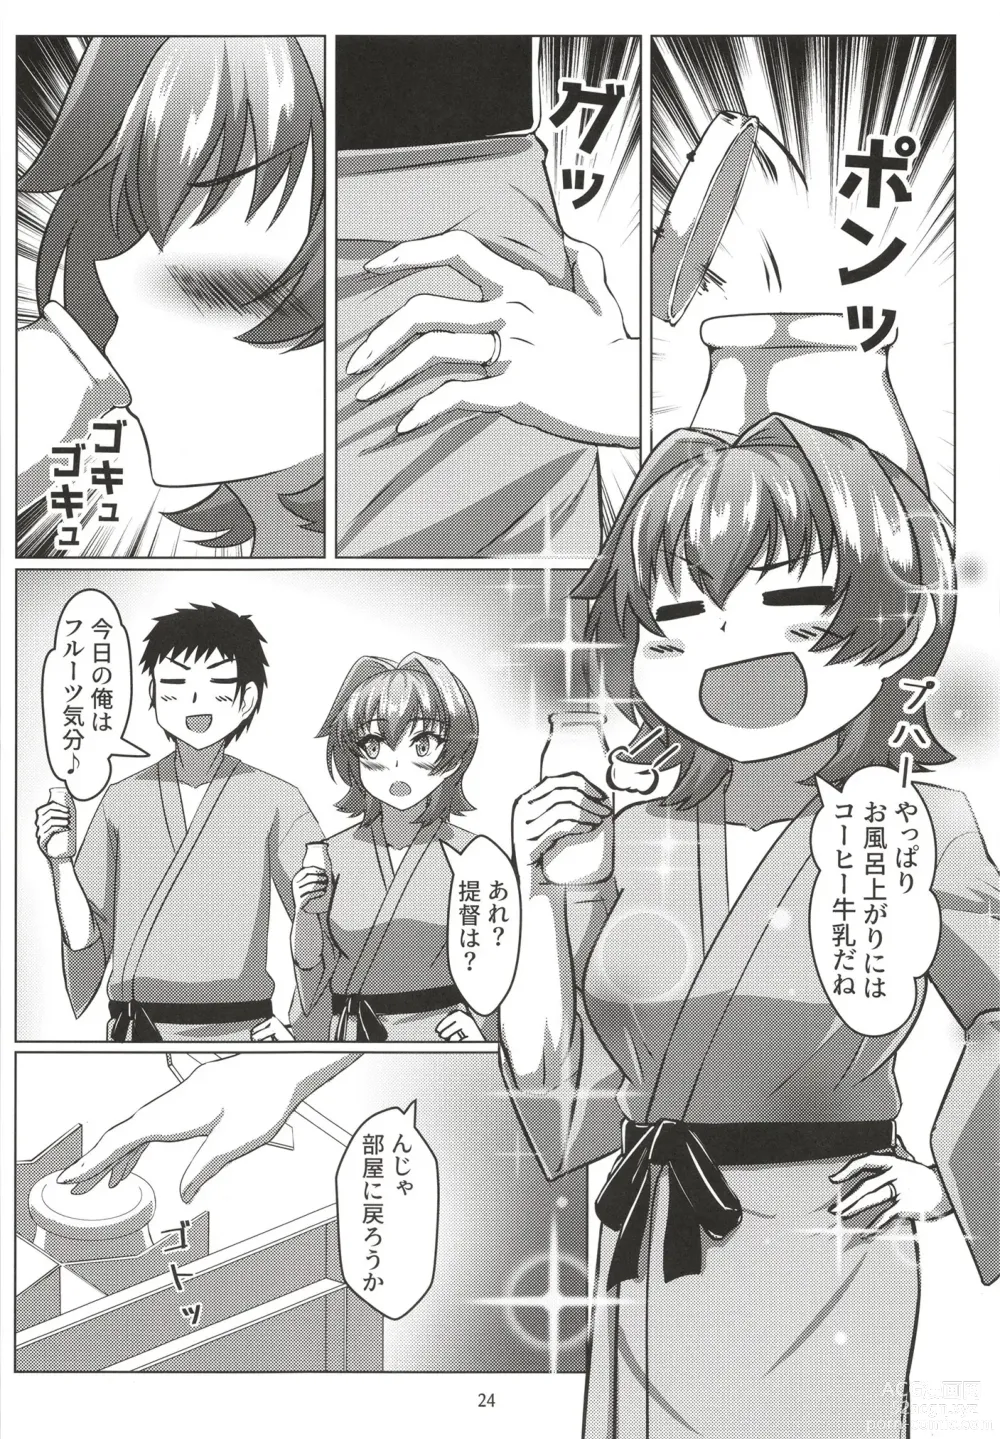 Page 24 of doujinshi Kinu to Shinkon Ryokou no Ohanashi